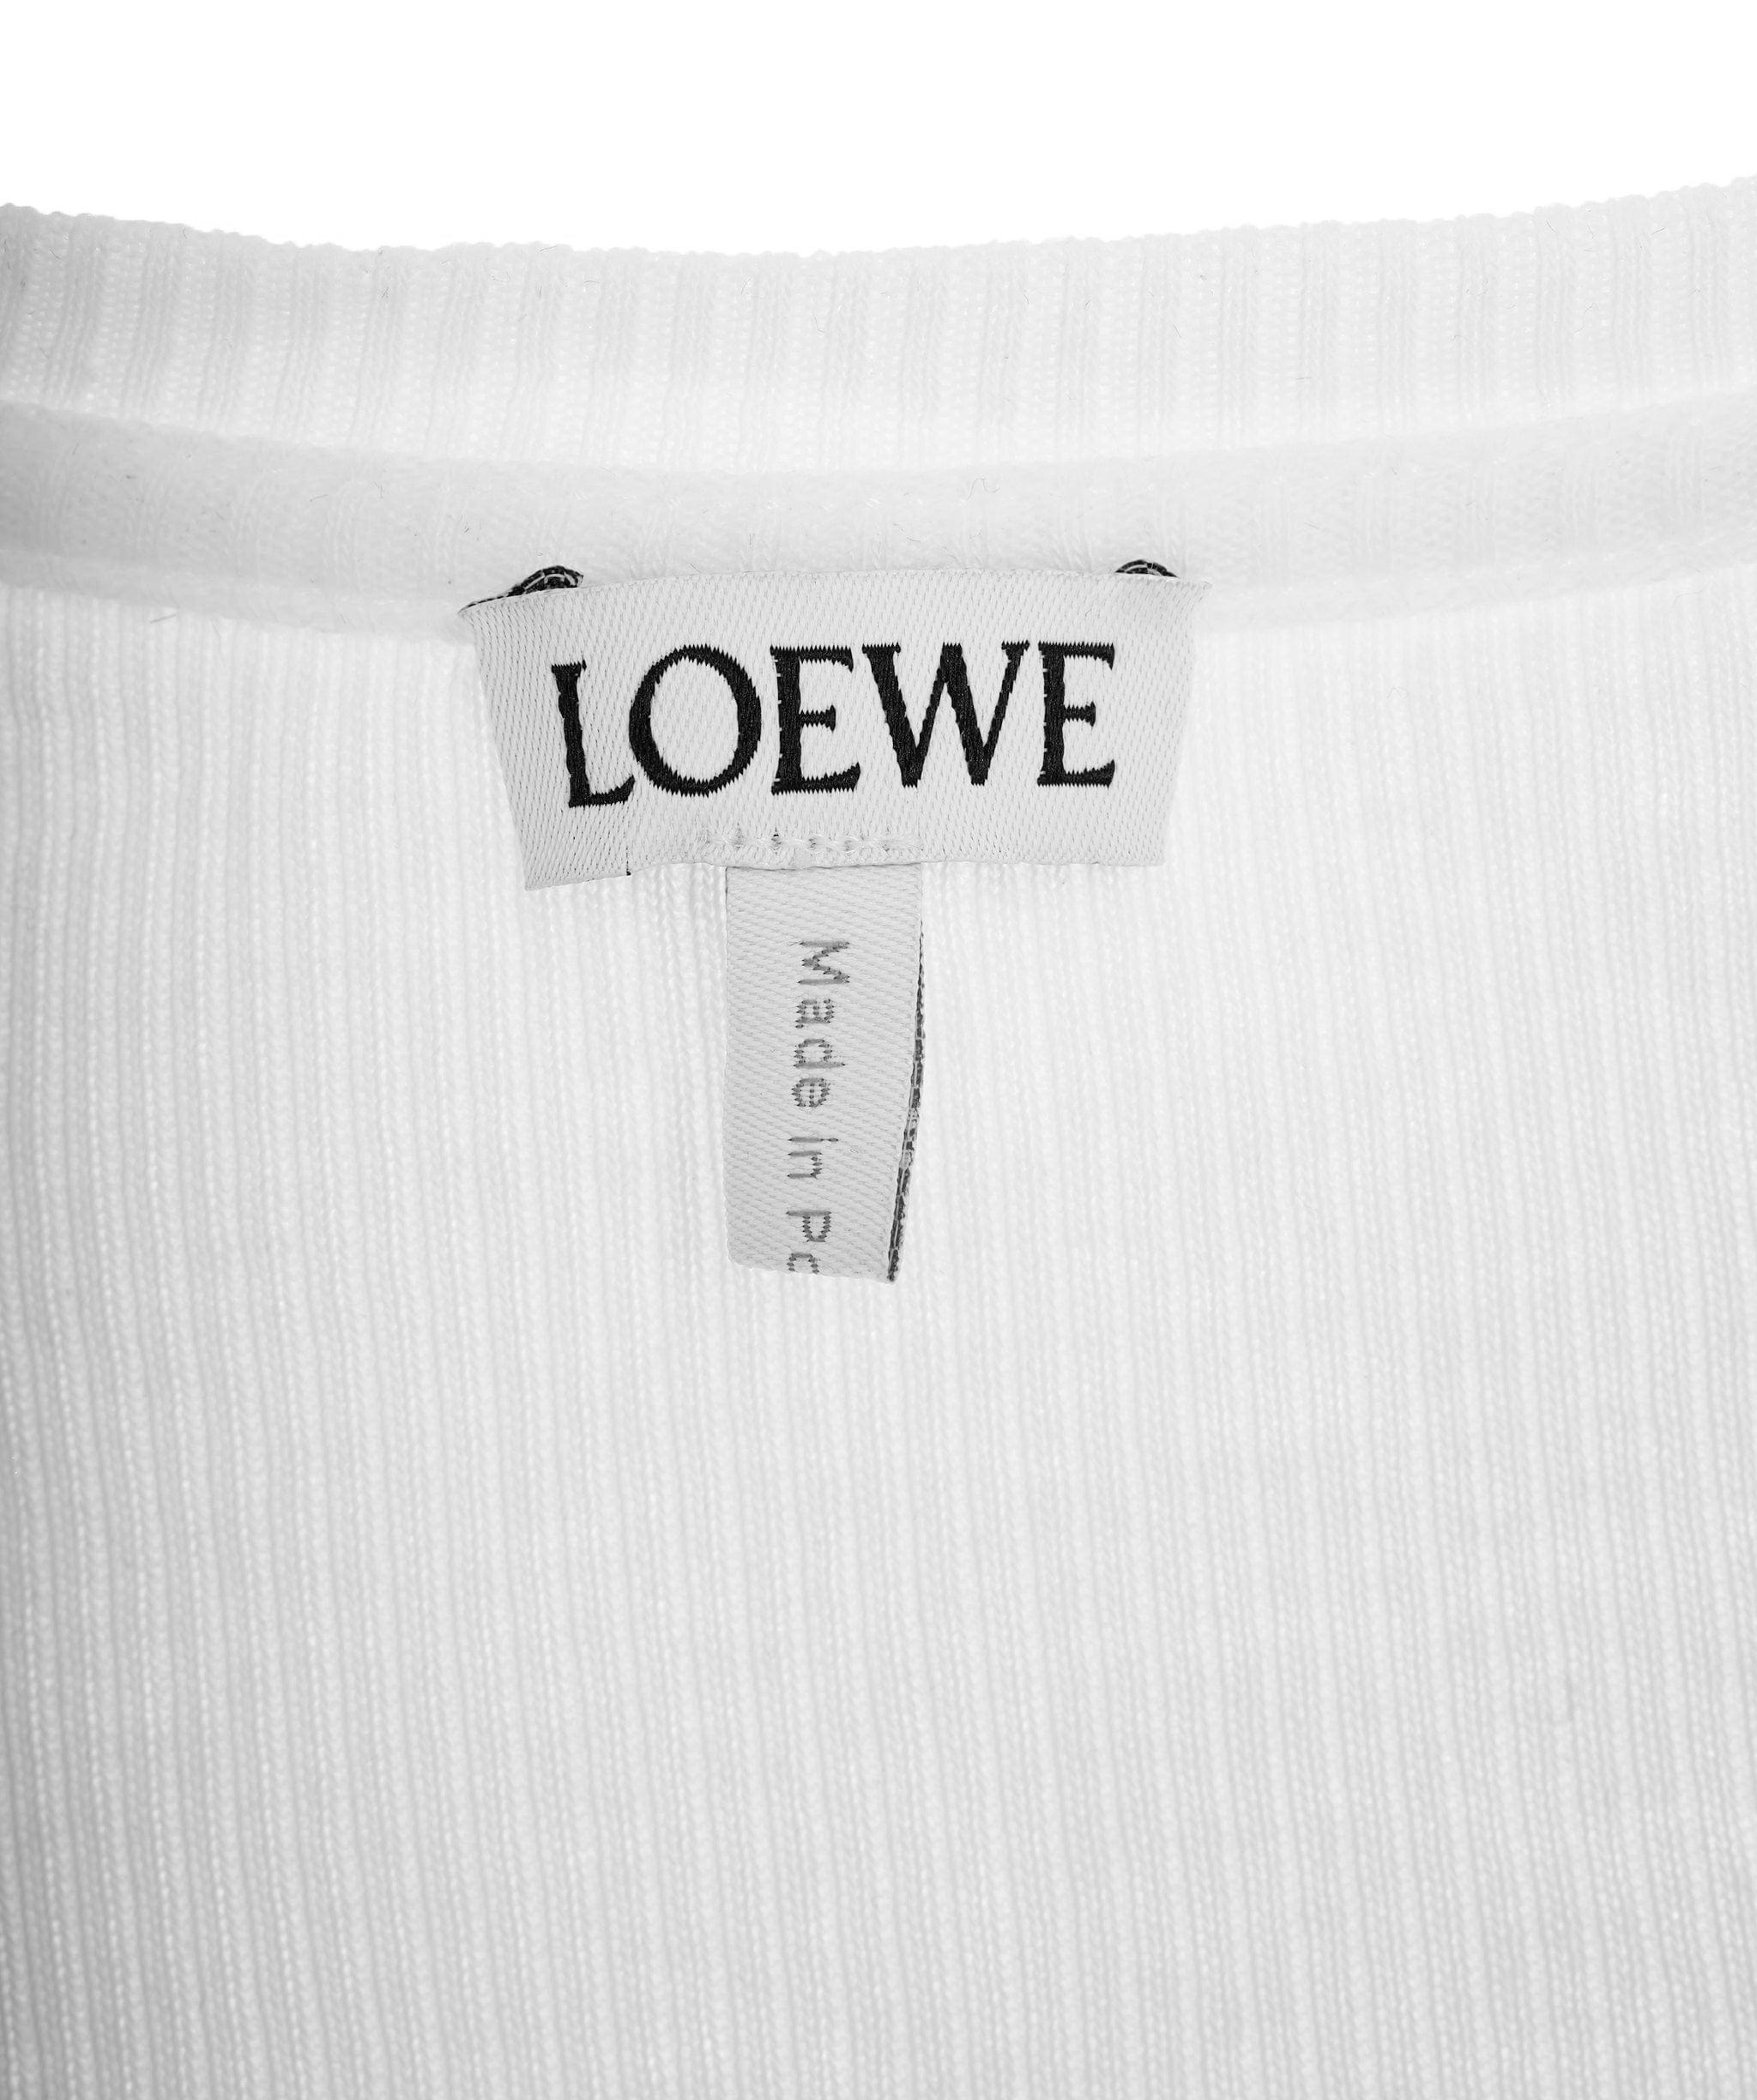 Loewe Loewe White Navy Tank Top  ALL0448